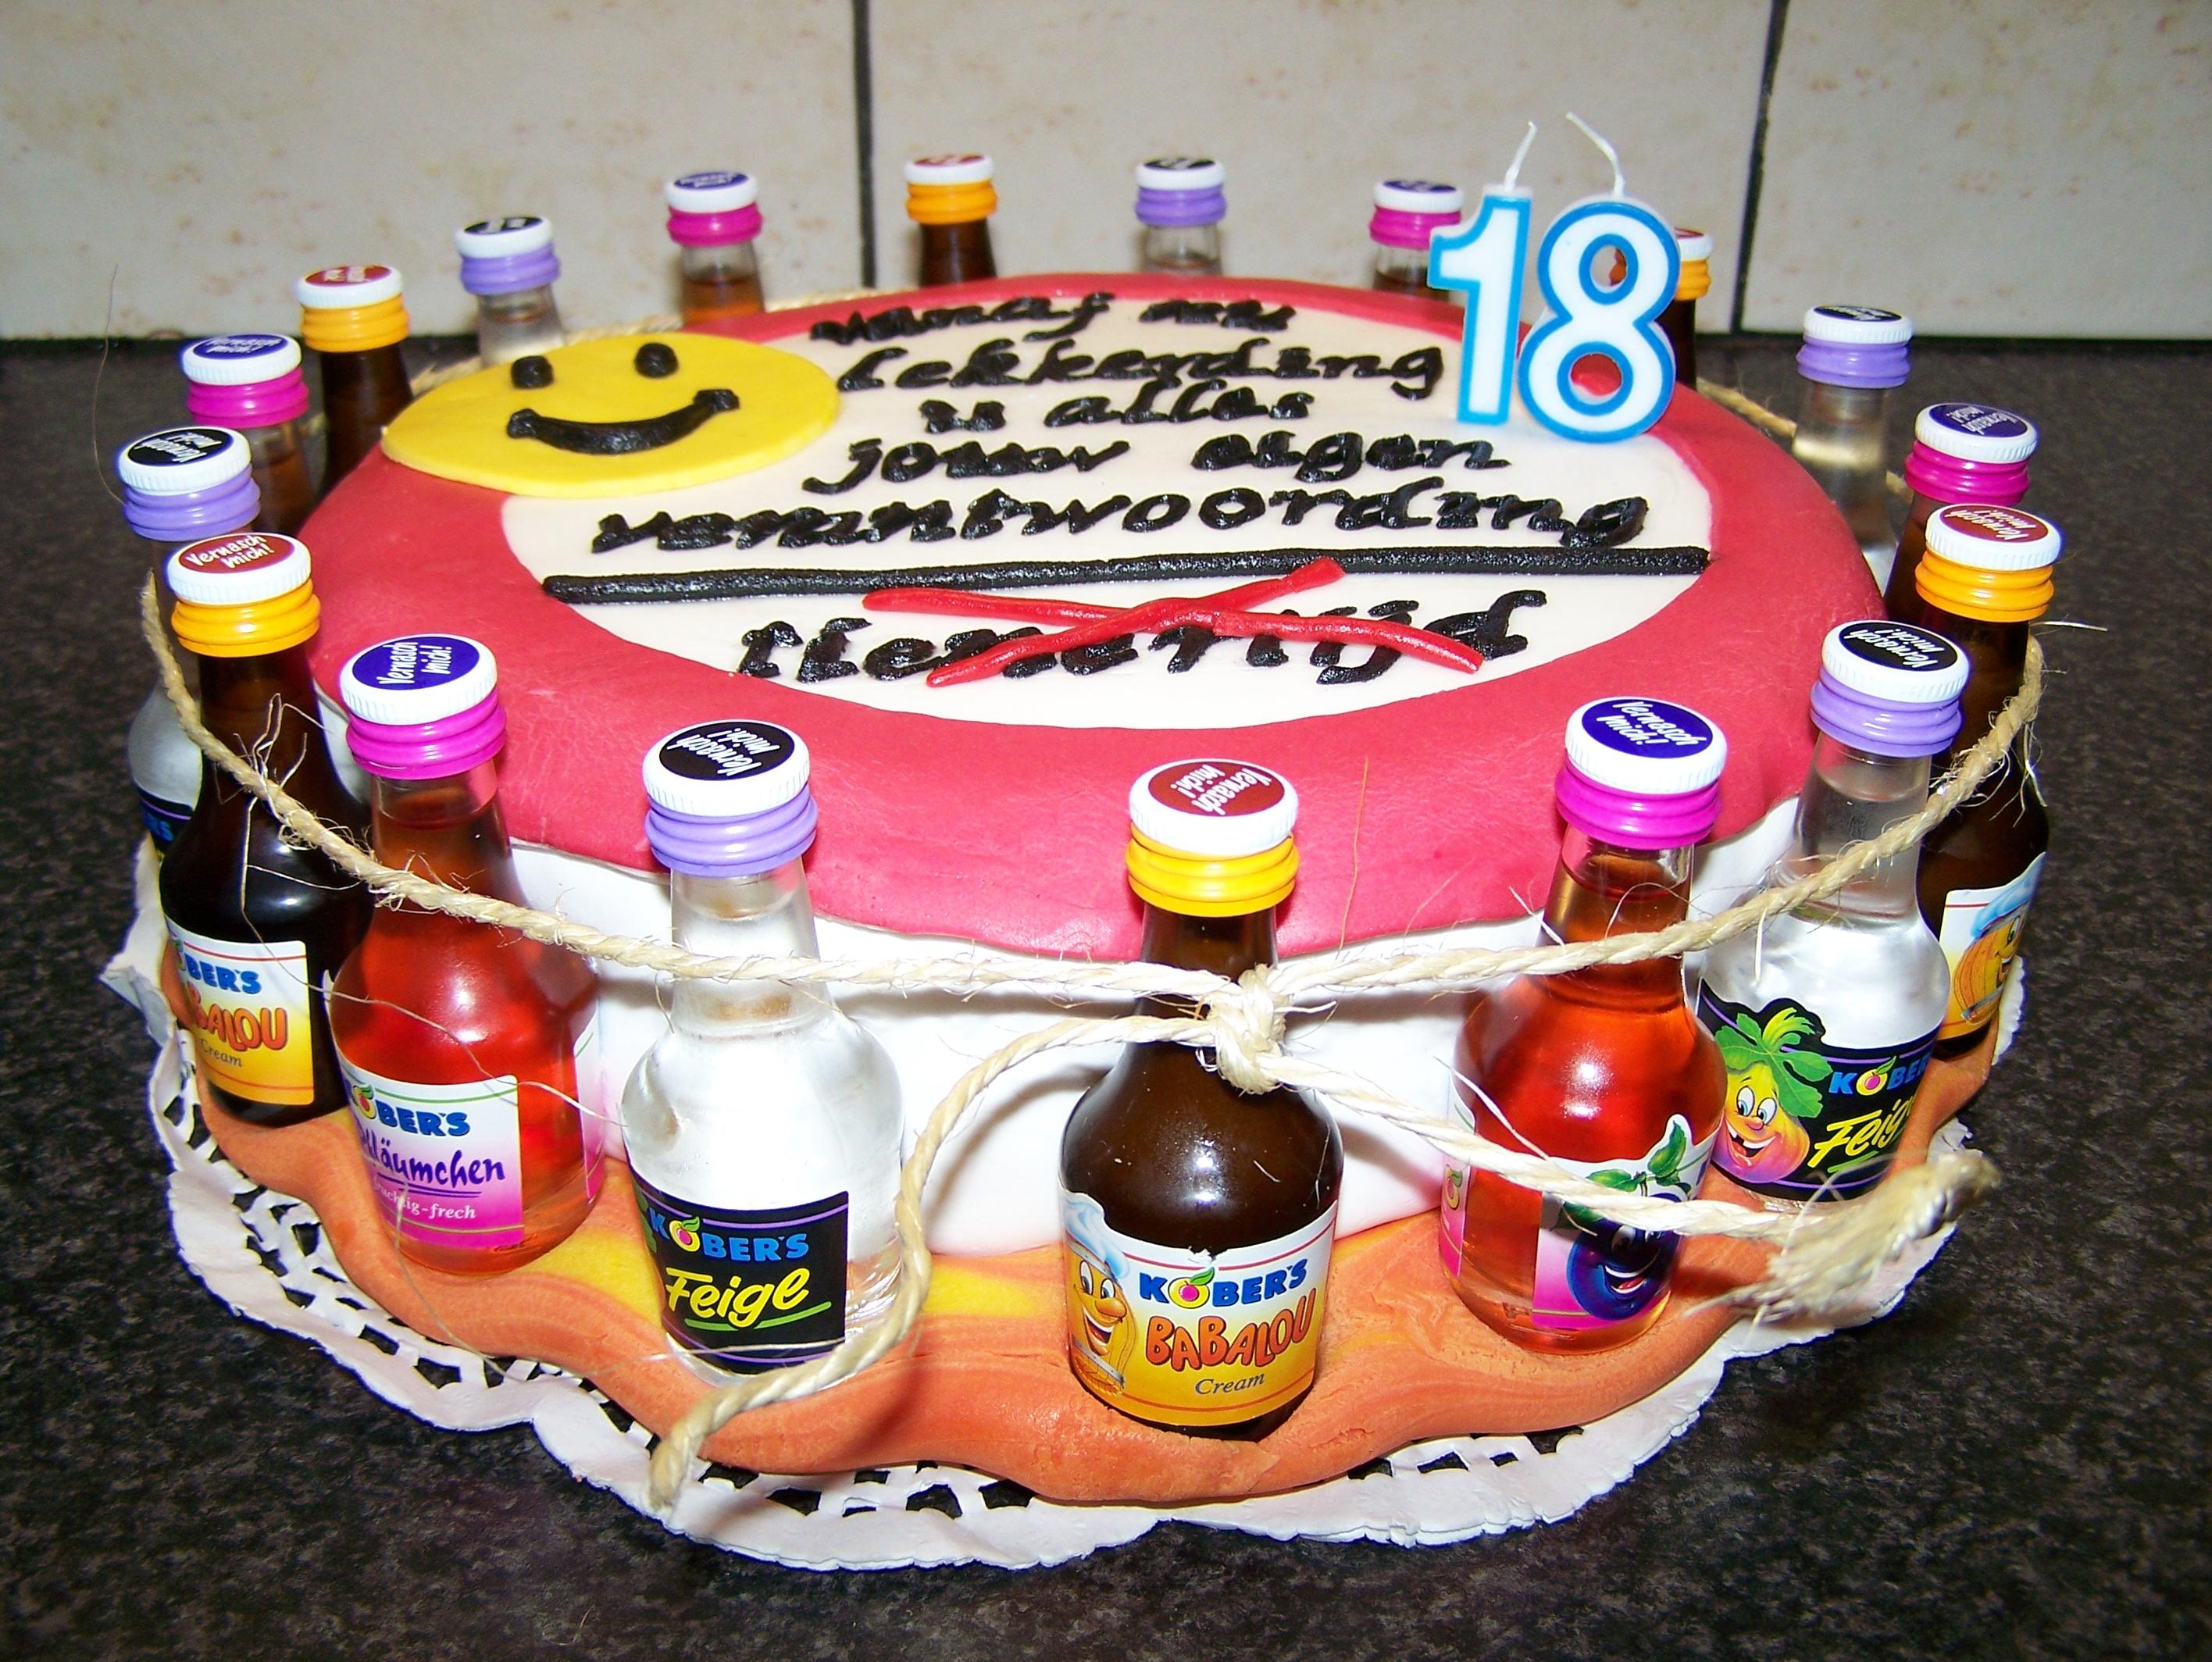 Bilder für Robby's Torte zum 18. Geburtstag - Rezept